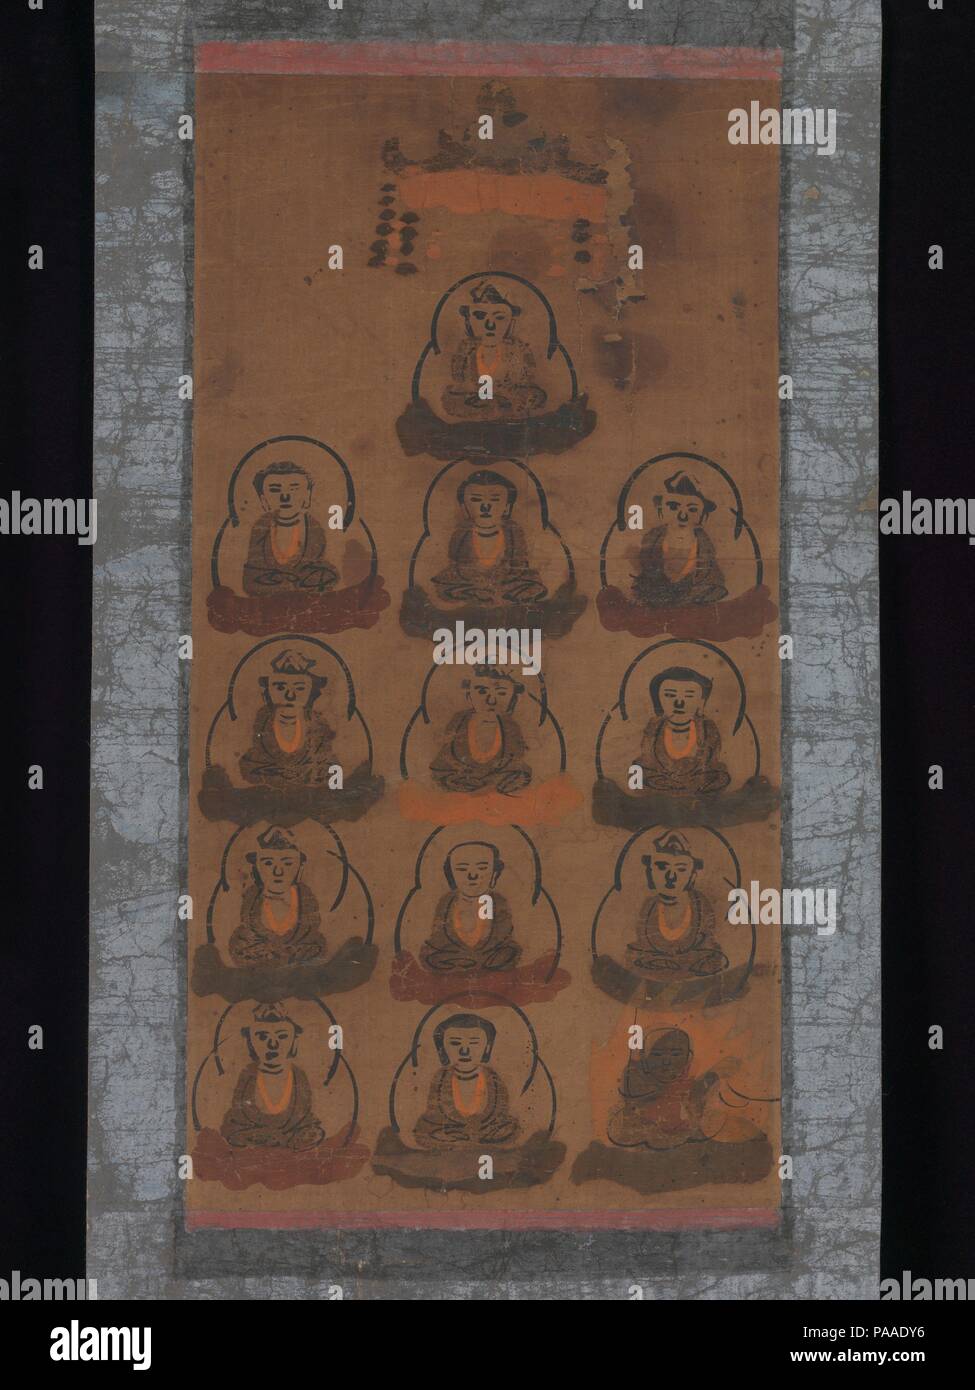 Otsu-e von 13 buddhistischen Gottheiten. Kultur: Japan. Abmessungen: Bild: 13 1/4 x 6 7/8 in. (33,7 x 17,5 cm) Insgesamt: 22 1/2 x 10 7/8 in. (57,2 x 27,6 cm). Datum: 17. Das Bild von 13 buddhistischen Gottheiten war für Gedenkstätten für die Verstorbenen gehalten in festen Zeitabständen über die Tage und Jahre nach dem Tod aufgehängt. Ursprünglich, eine Reihe von Gemälden, die die Gottheiten, die einzeln verwendet, die aber dieses Bild vereint sie zu einer Ikone, die wiederholt von weniger wohlhabenden Familien beschäftigt werden könnte. Halos, die Gottheiten und mandorlen sind Holzschnitt mit der gleichen Block gedruckt, während einer begrenzten Anzahl o Stockfoto